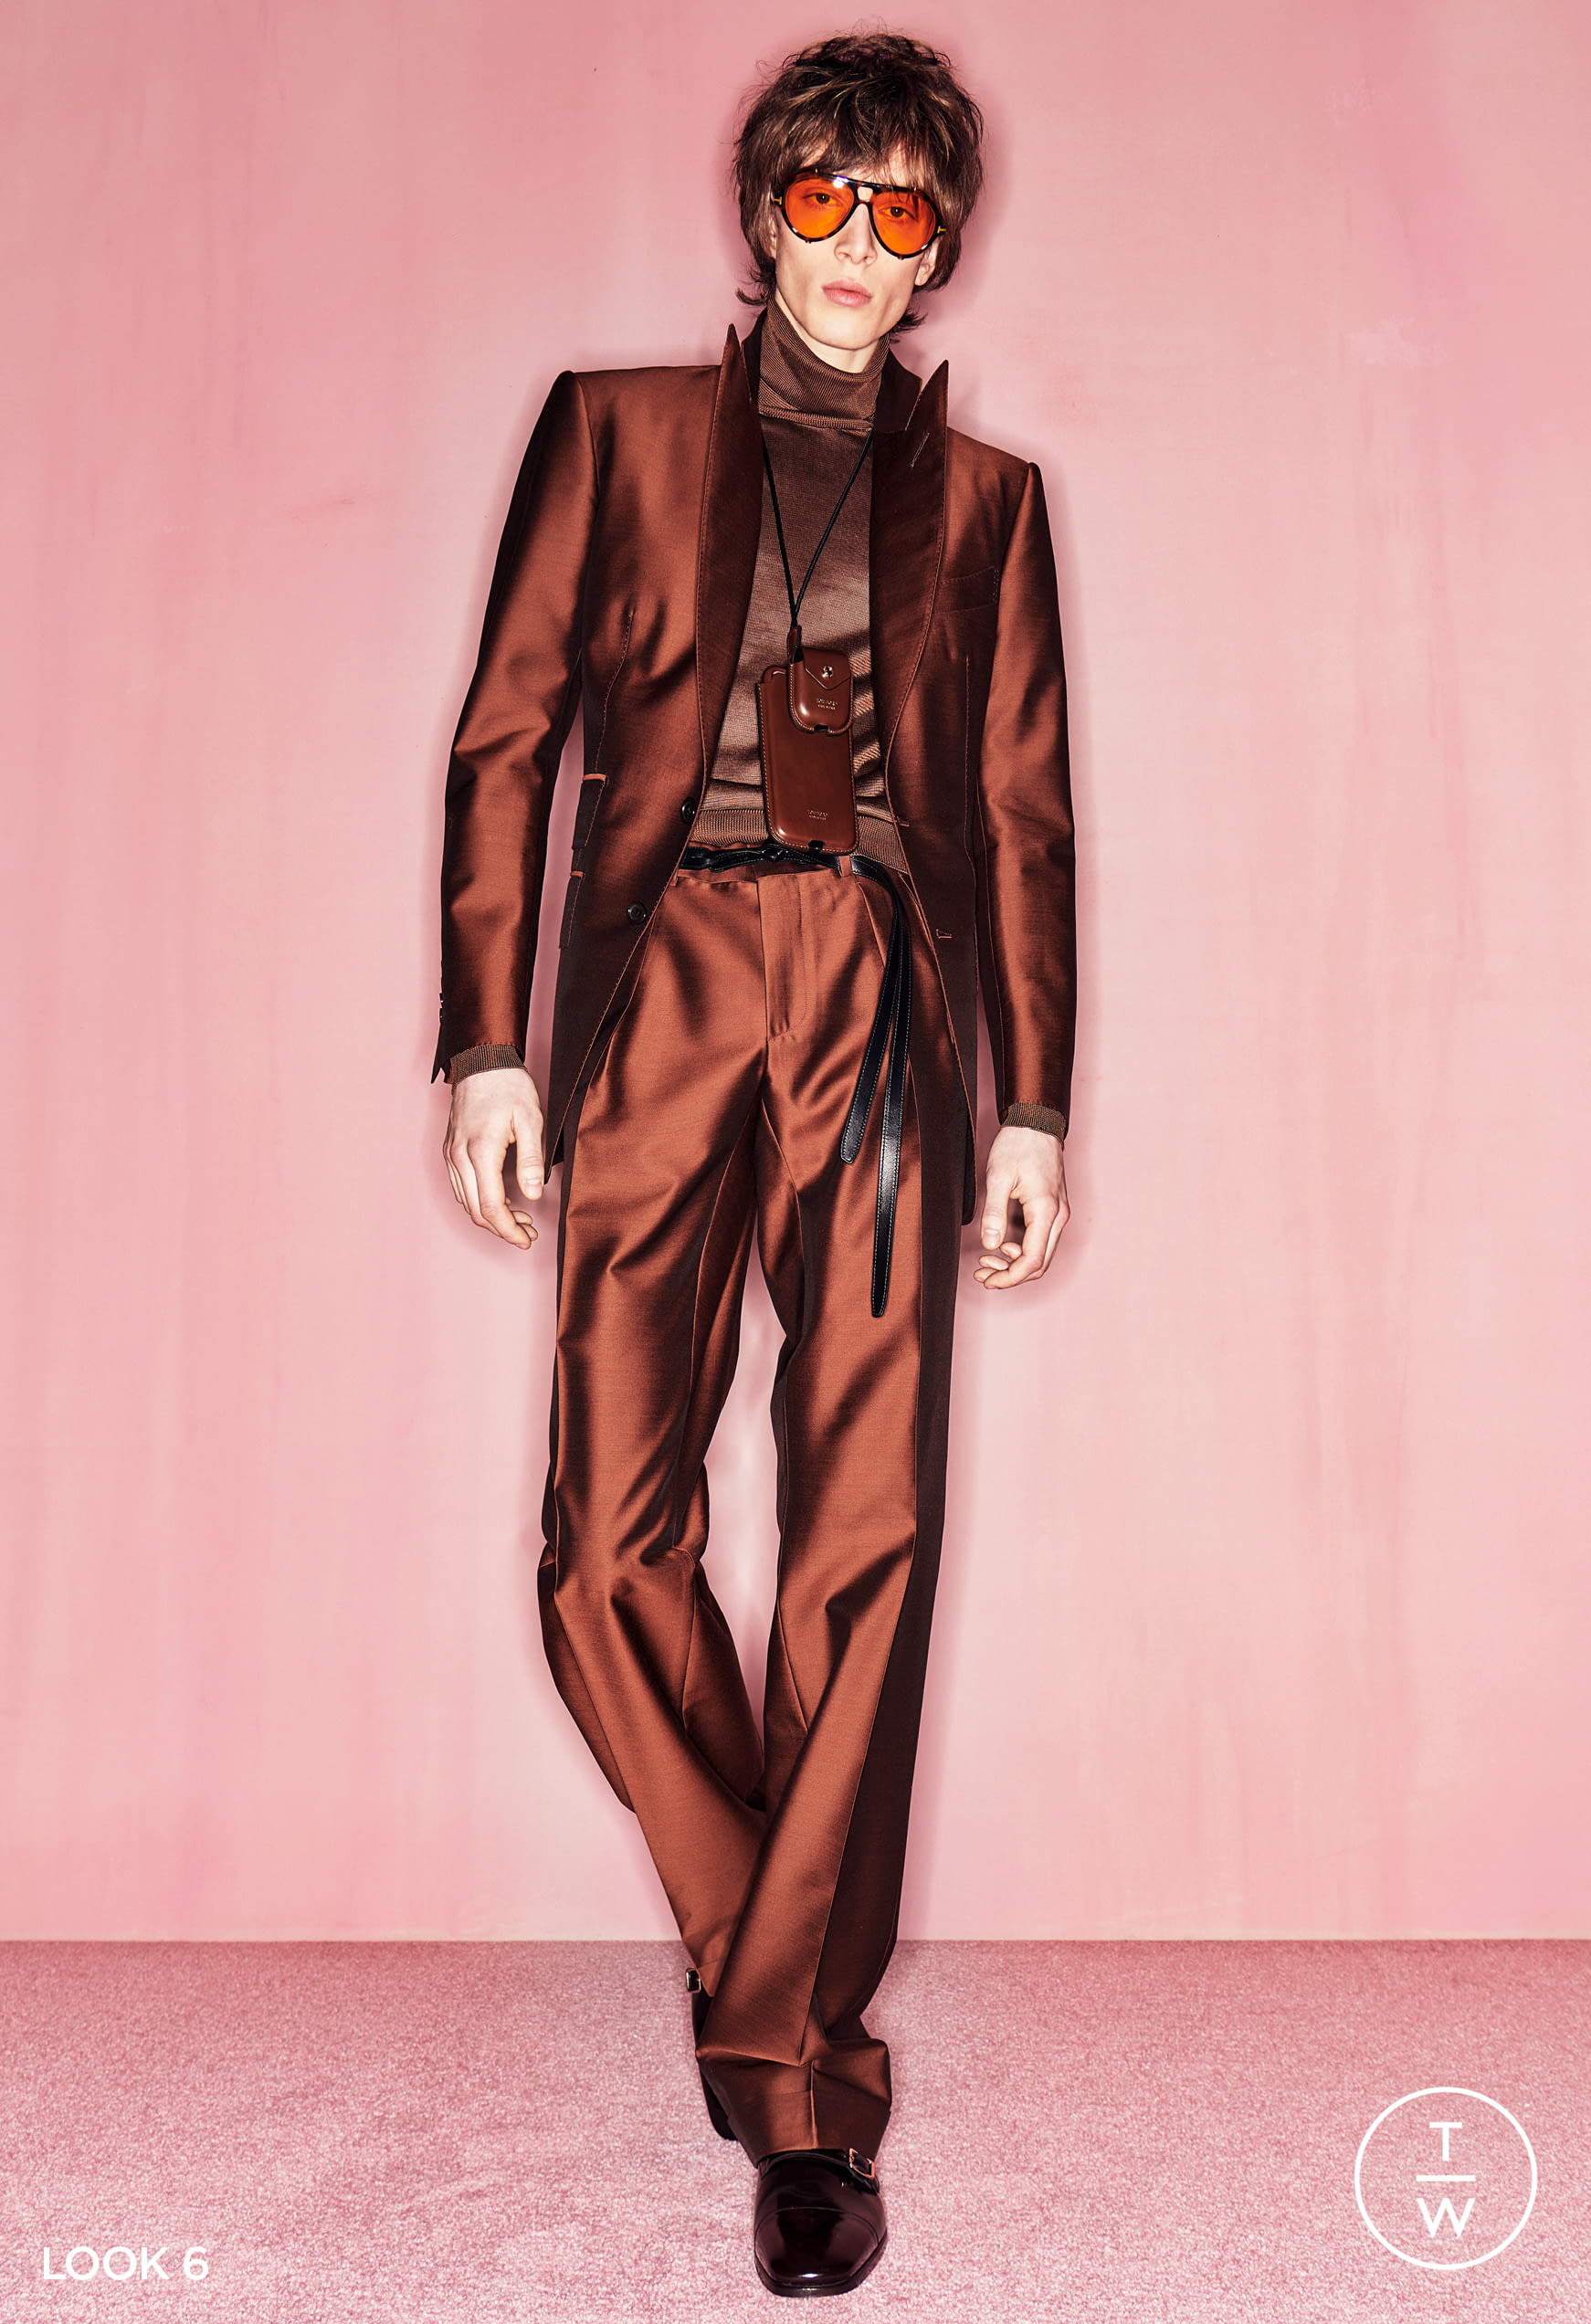 Ontcijferen Ontslag heroïsch Tom Ford FW20 menswear #6 - The Fashion Search Engine - TAGWALK